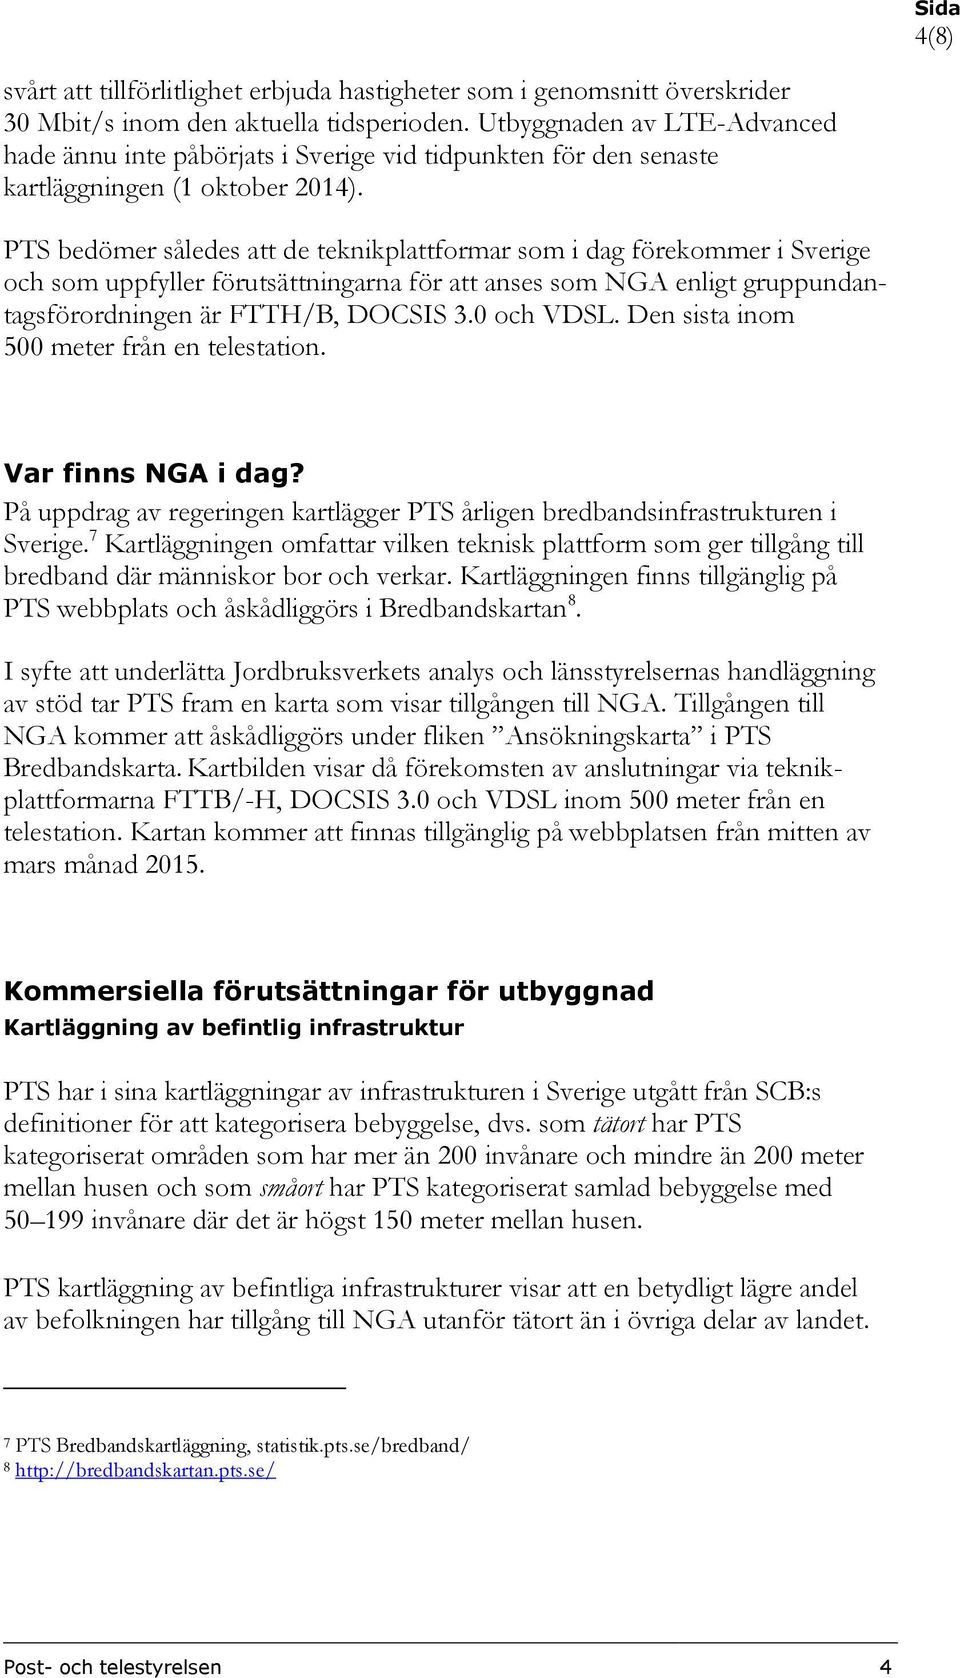 PTS bedömer således att de teknikplattformar som i dag förekommer i Sverige och som uppfyller förutsättningarna för att anses som NGA enligt gruppundantagsförordningen är FTTH/B, DOCSIS 3.0 och VDSL.